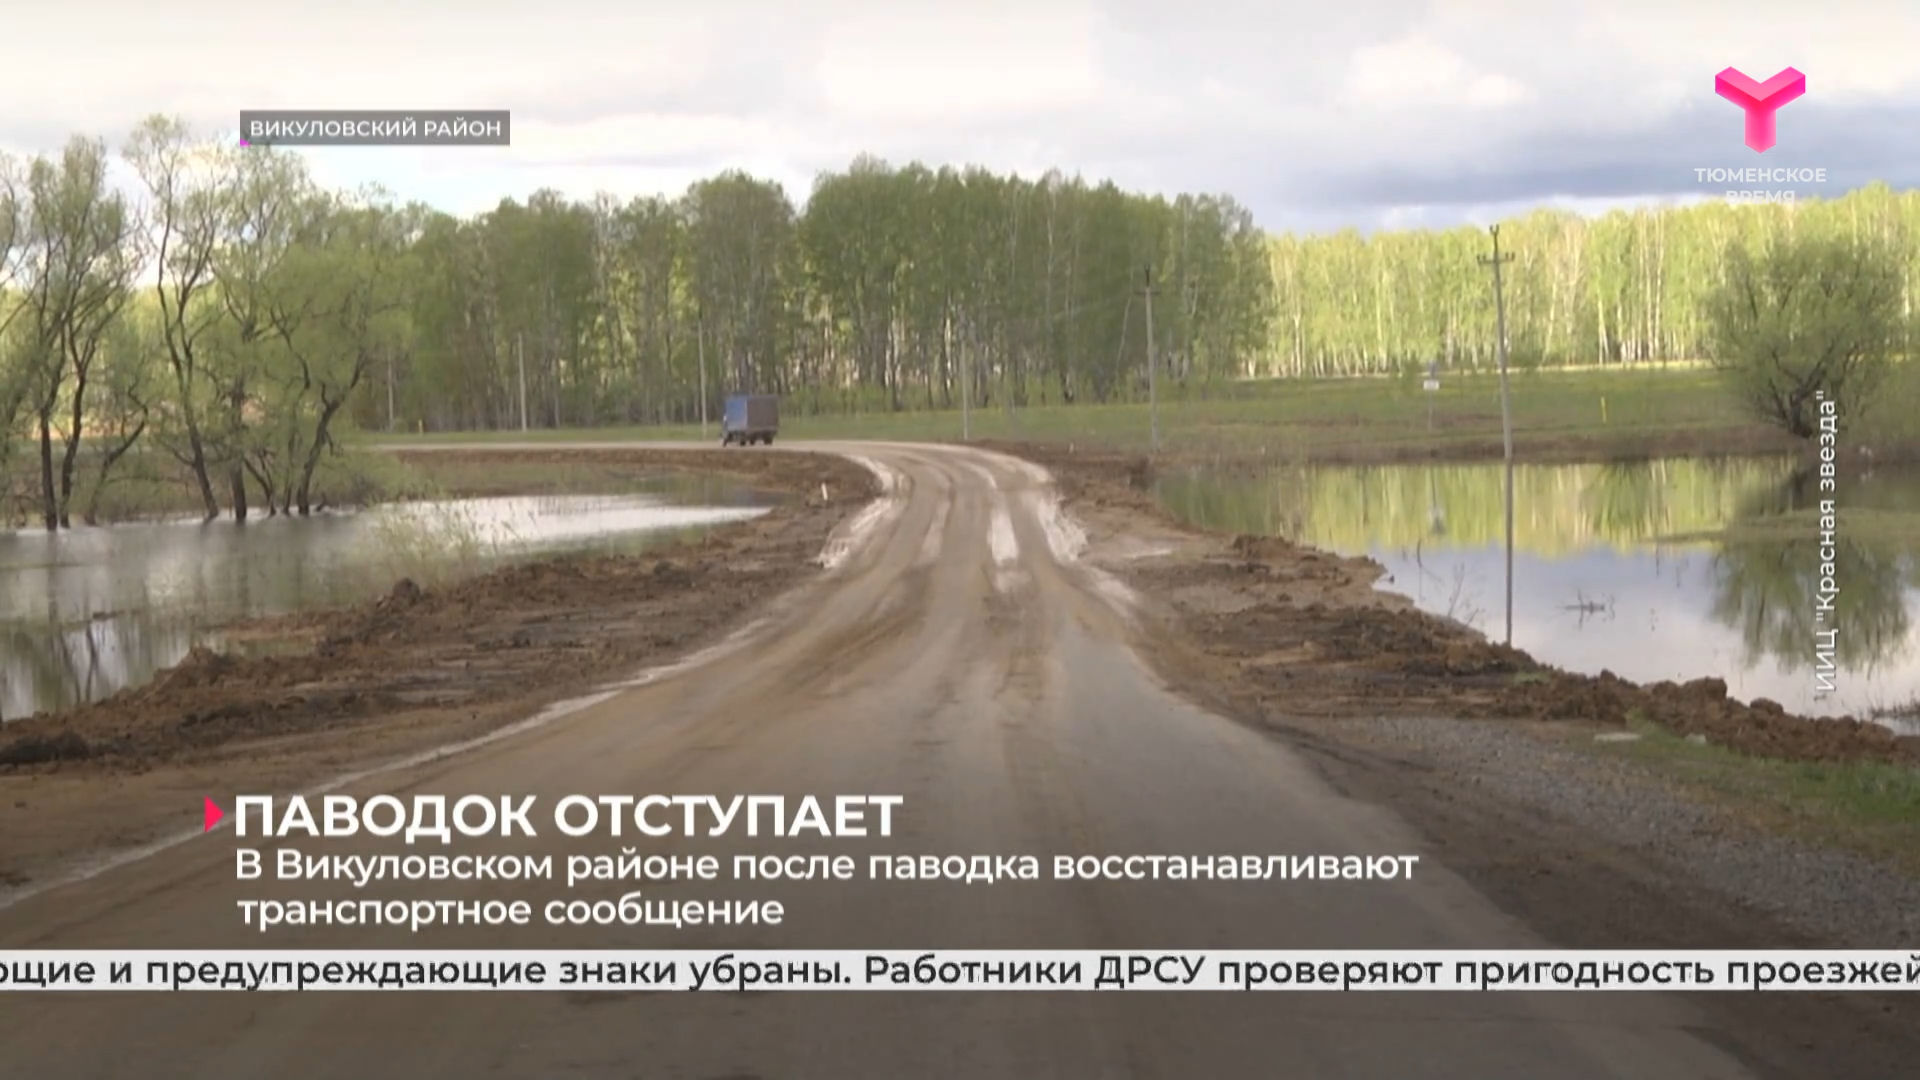 В Викуловском районе после паводка восстанавливают транспортное сообщение